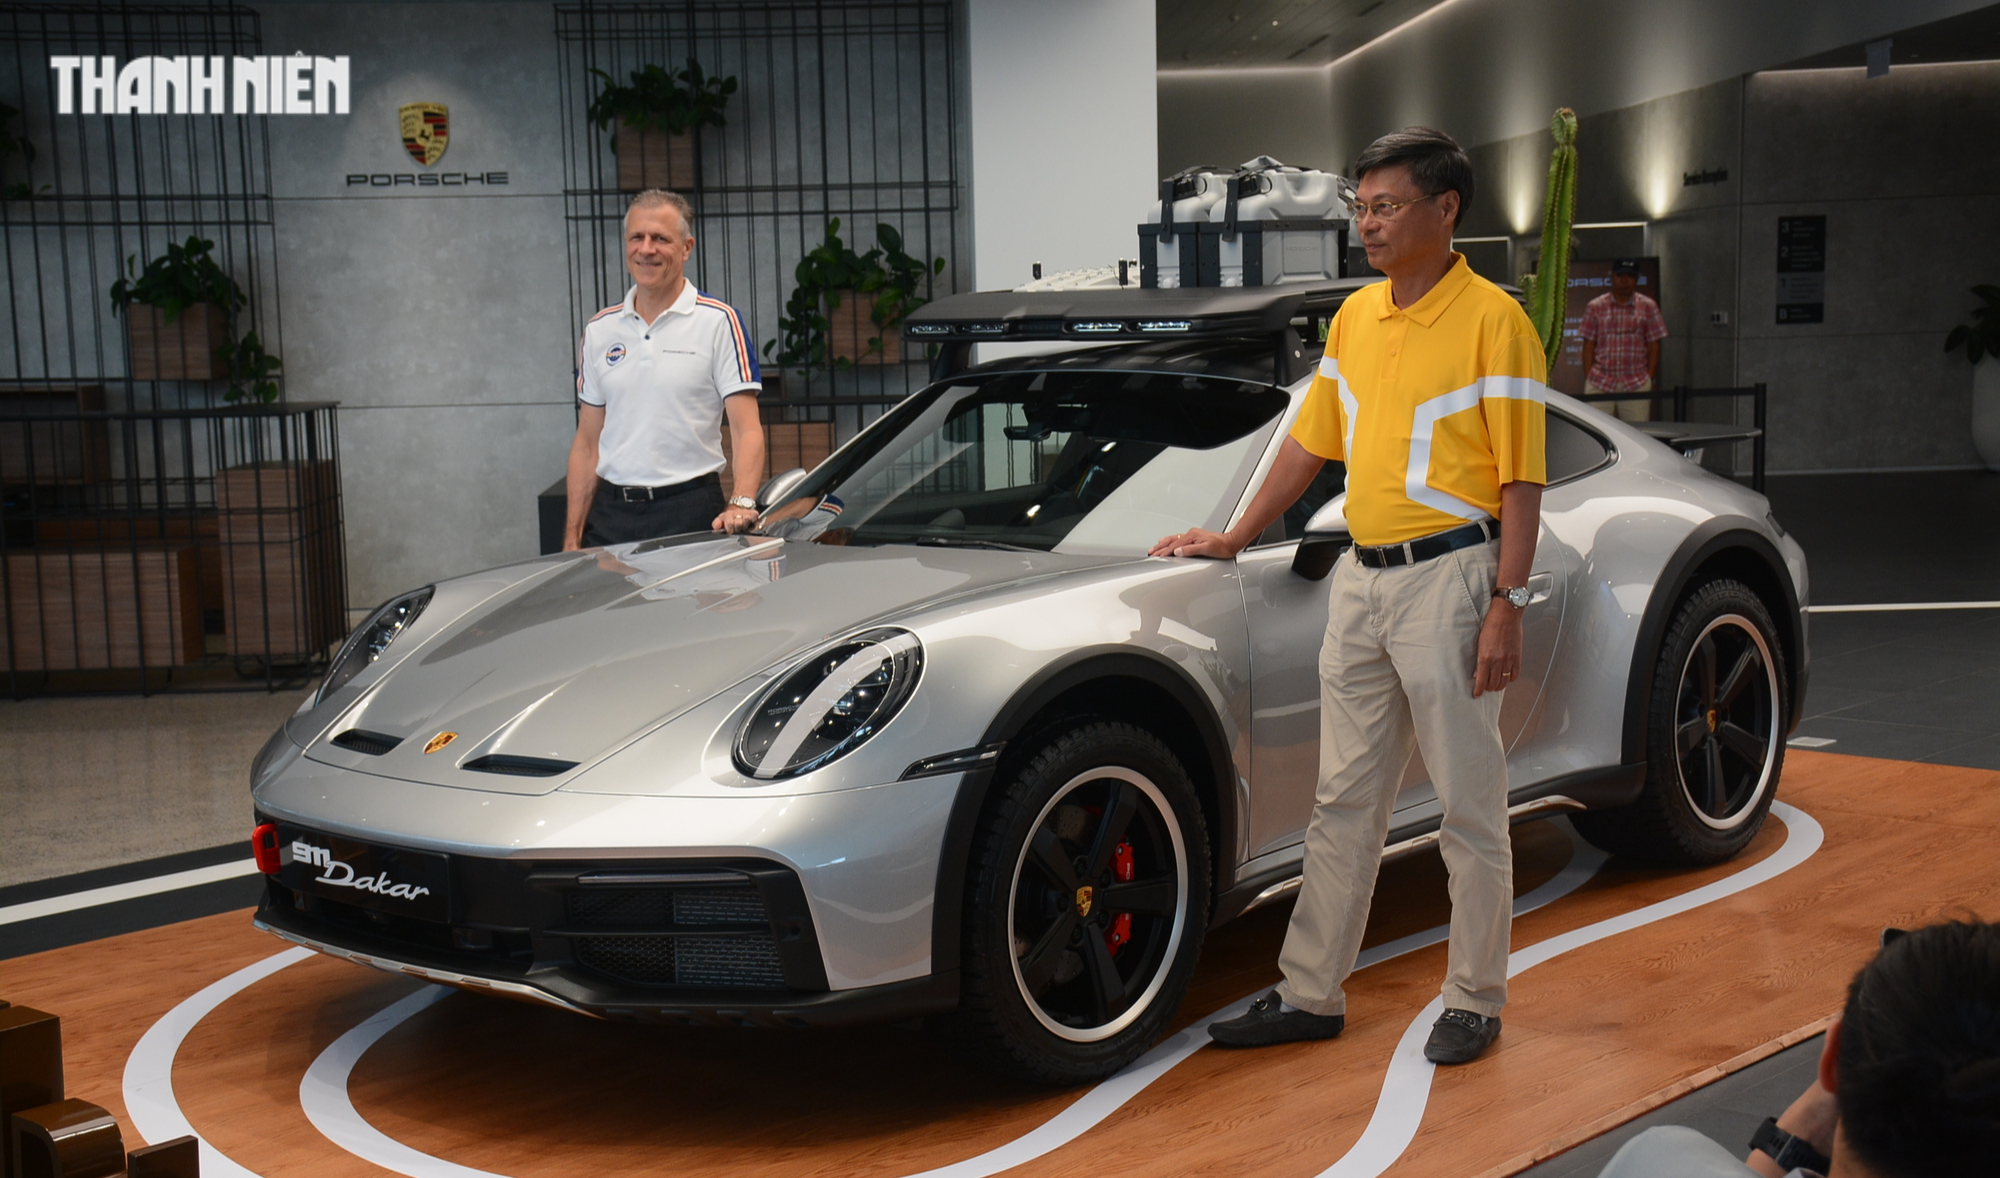 'Hàng hiếm' Porsche 911 Dakar đầu tiên về Việt Nam giá 16 tỉ đồng đã có chủ - Ảnh 2.